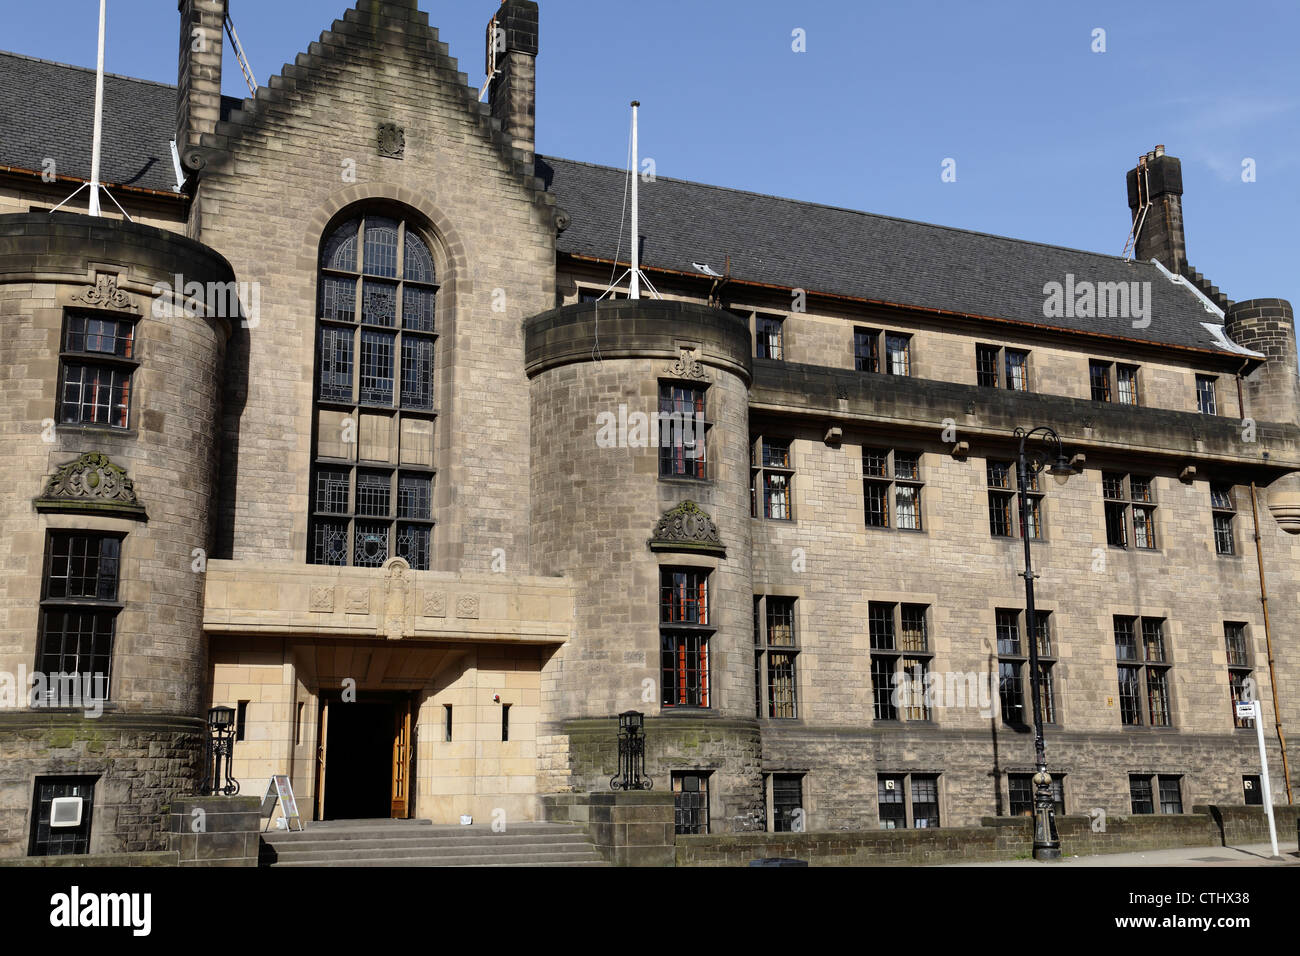 University of Glasgow Student Union building on University Avenue, Scotland, UK Stock Photo